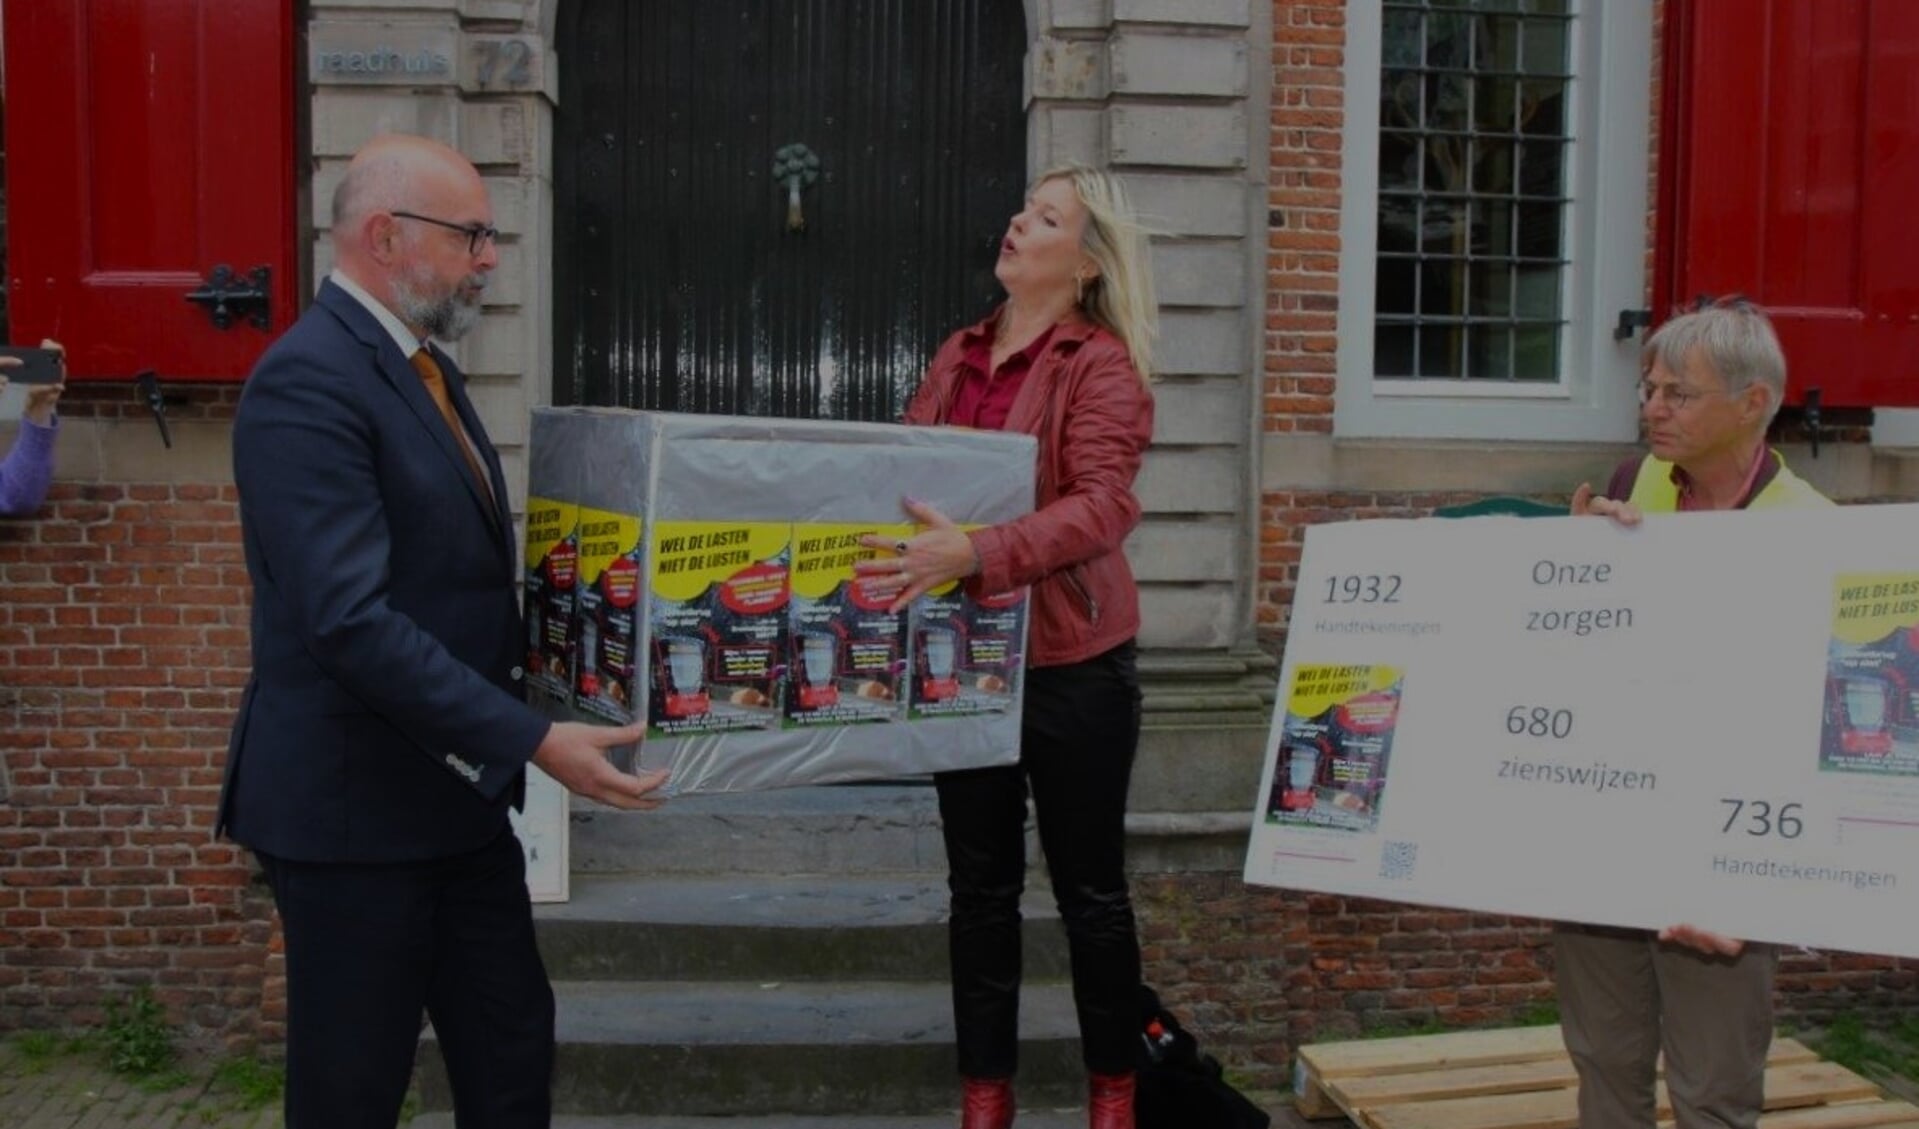 Burgemeester Martijn Vroom krijgt een pak vol zorgen en handtekeningen overhandigd na afloop van de protestmars (foto: Ap de Heus).